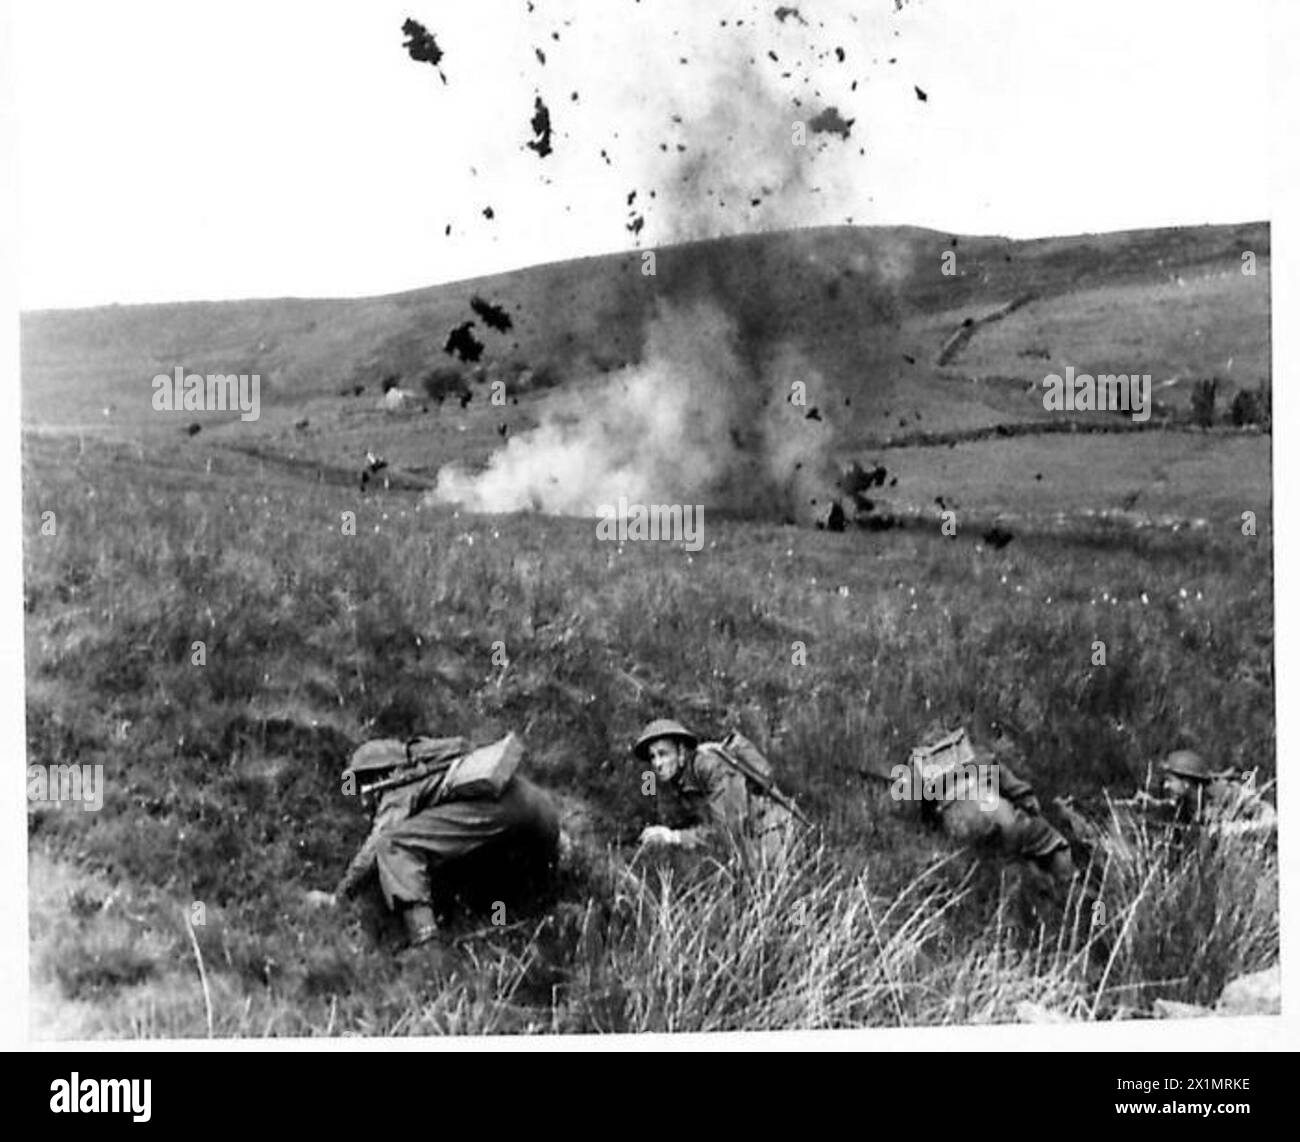 ÉCOLE DE L'EXERCICE DE BATAILLE - avec des charges explosant autour d'eux, les hommes avancent vers le haut de la colline à leur objectif, l'armée britannique Banque D'Images